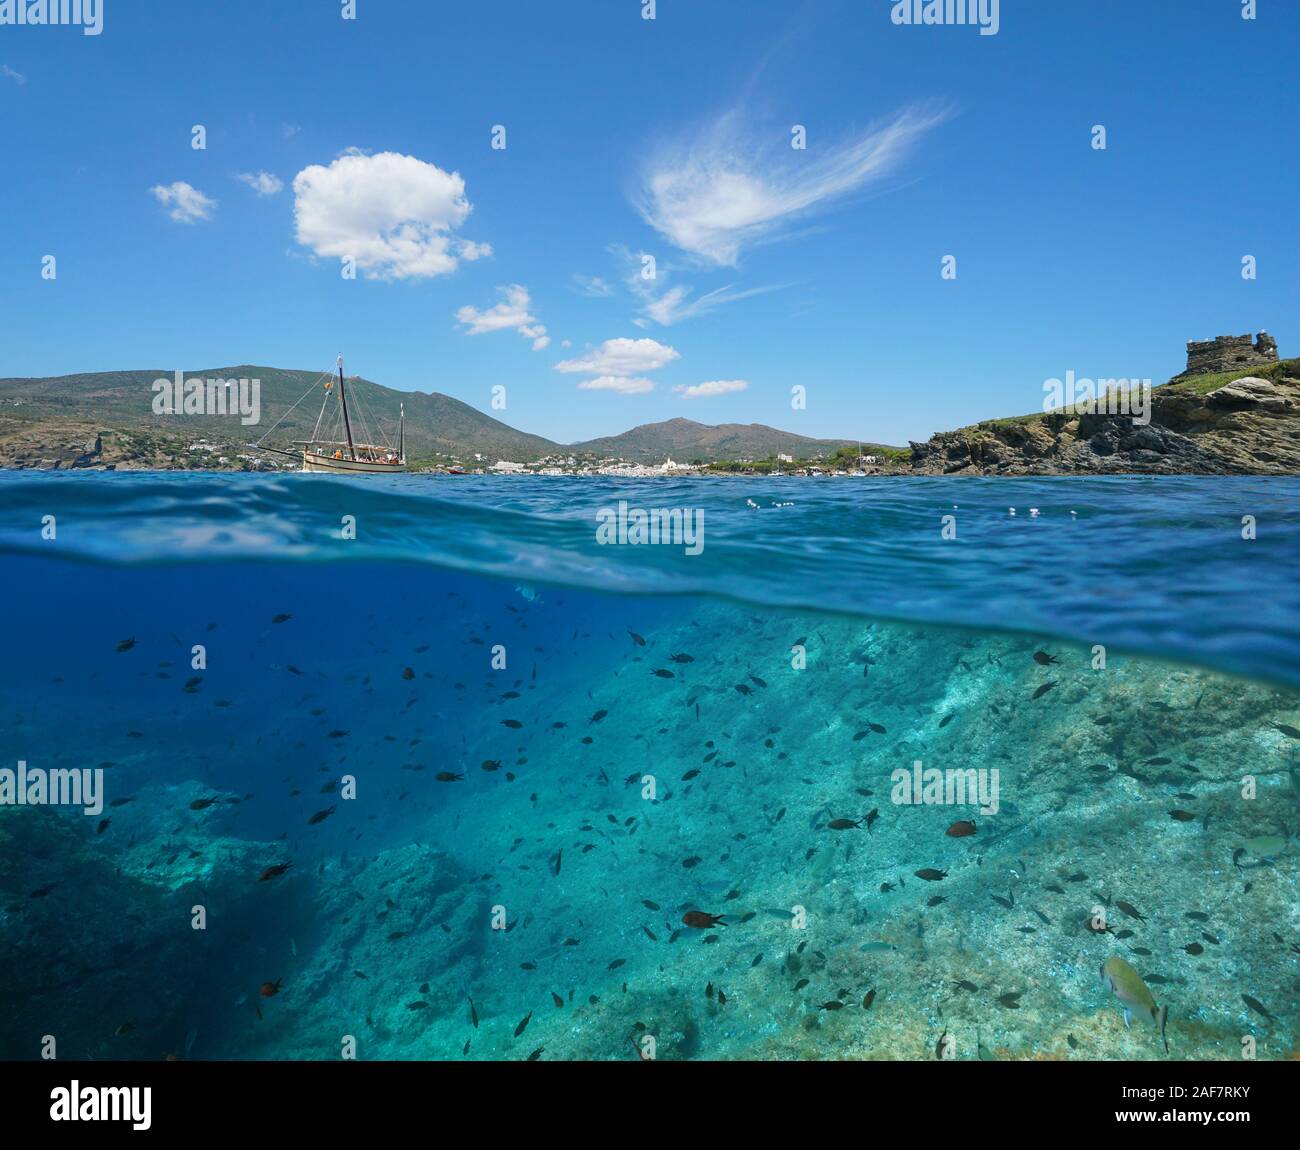 L'Espagne, de la Méditerranée près de Cadaqués, paysage marin littoral avec beaucoup de poissons dans la mer, Costa Brava, fractionnée sur et sous la surface de l'eau, Catalogne Banque D'Images